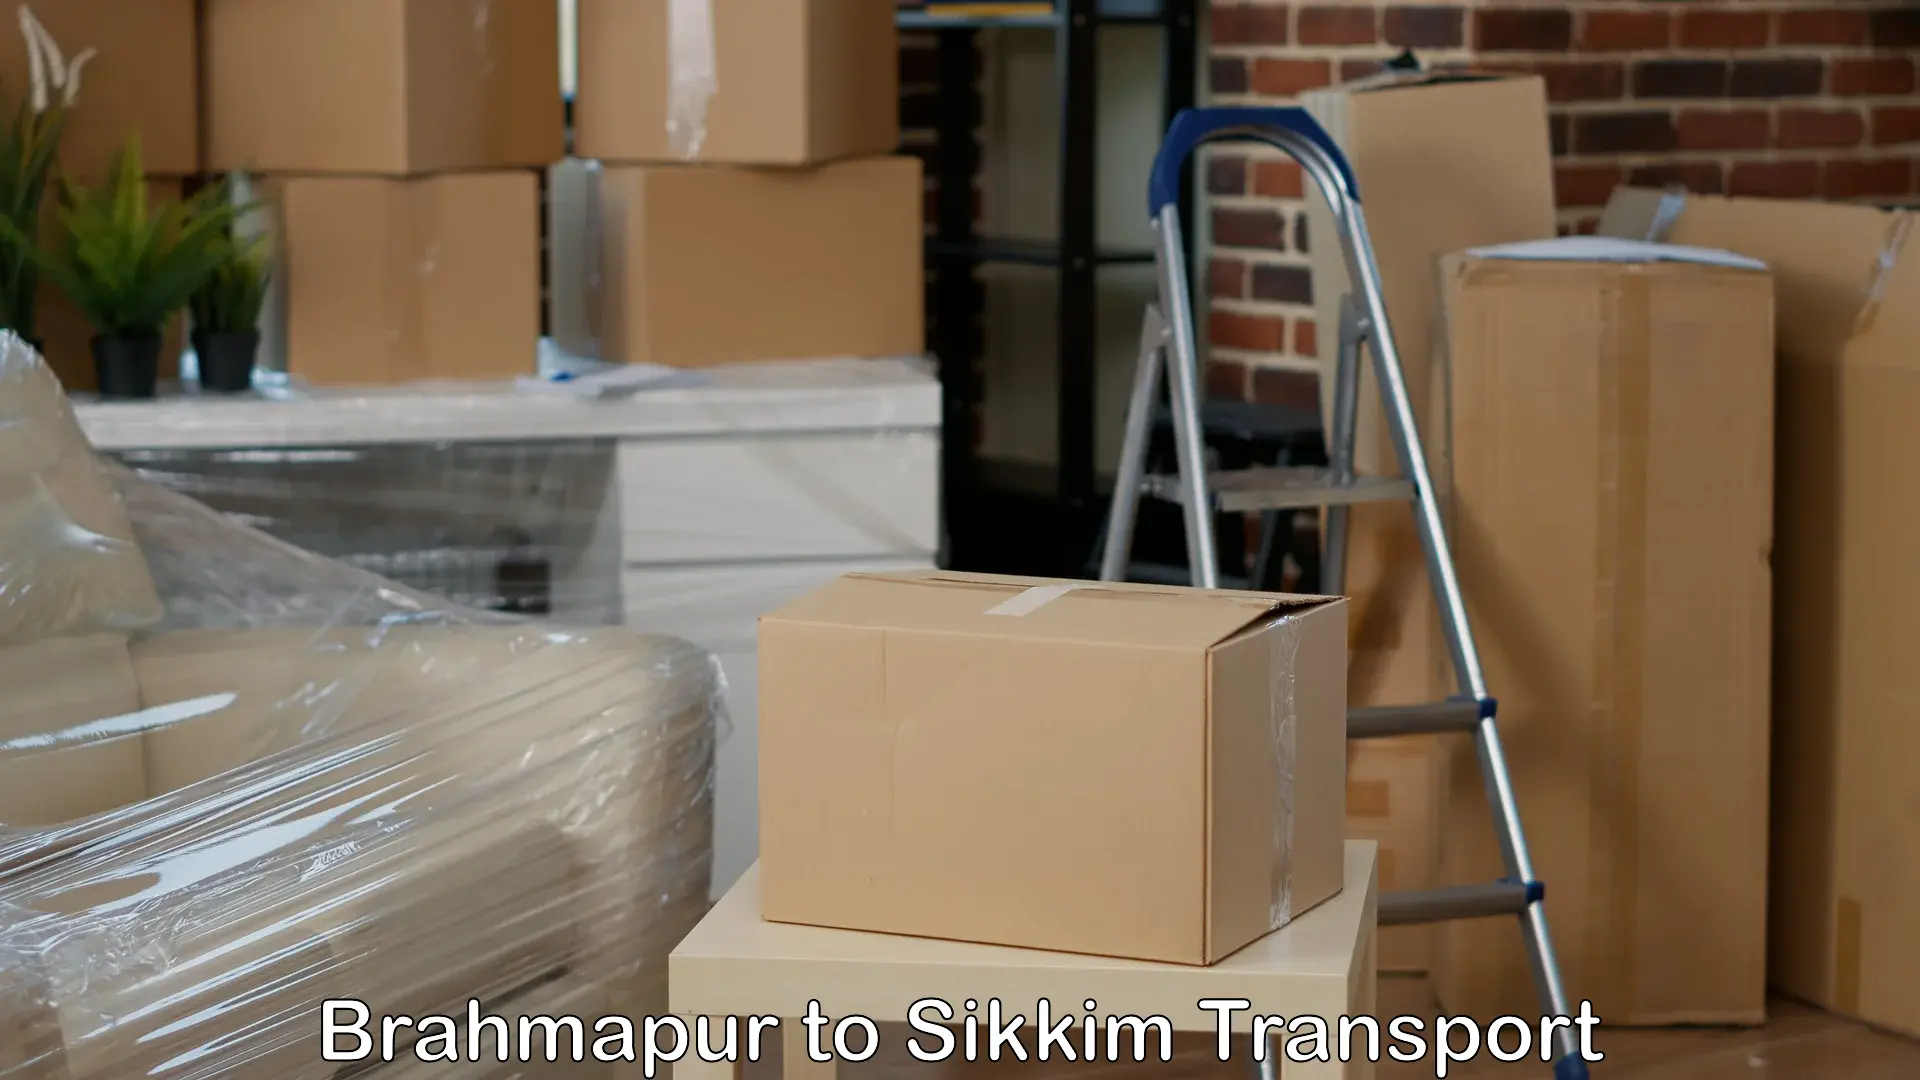 Bike transport service Brahmapur to North Sikkim